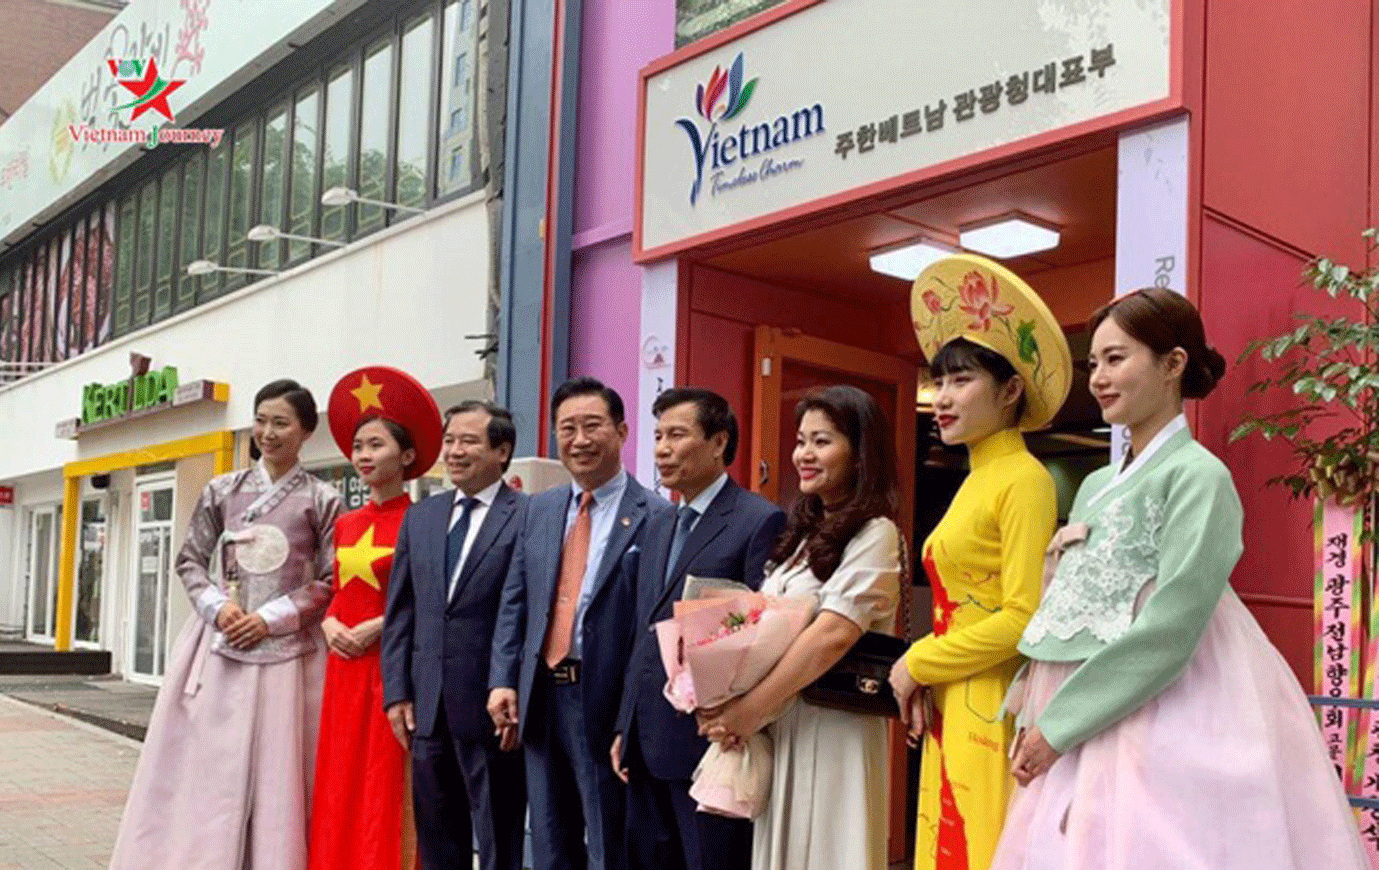 Du lịch Việt Nam đón lượng khách kỷ lục, nhận cơn mưa giải thưởng trong năm 2019 - 9